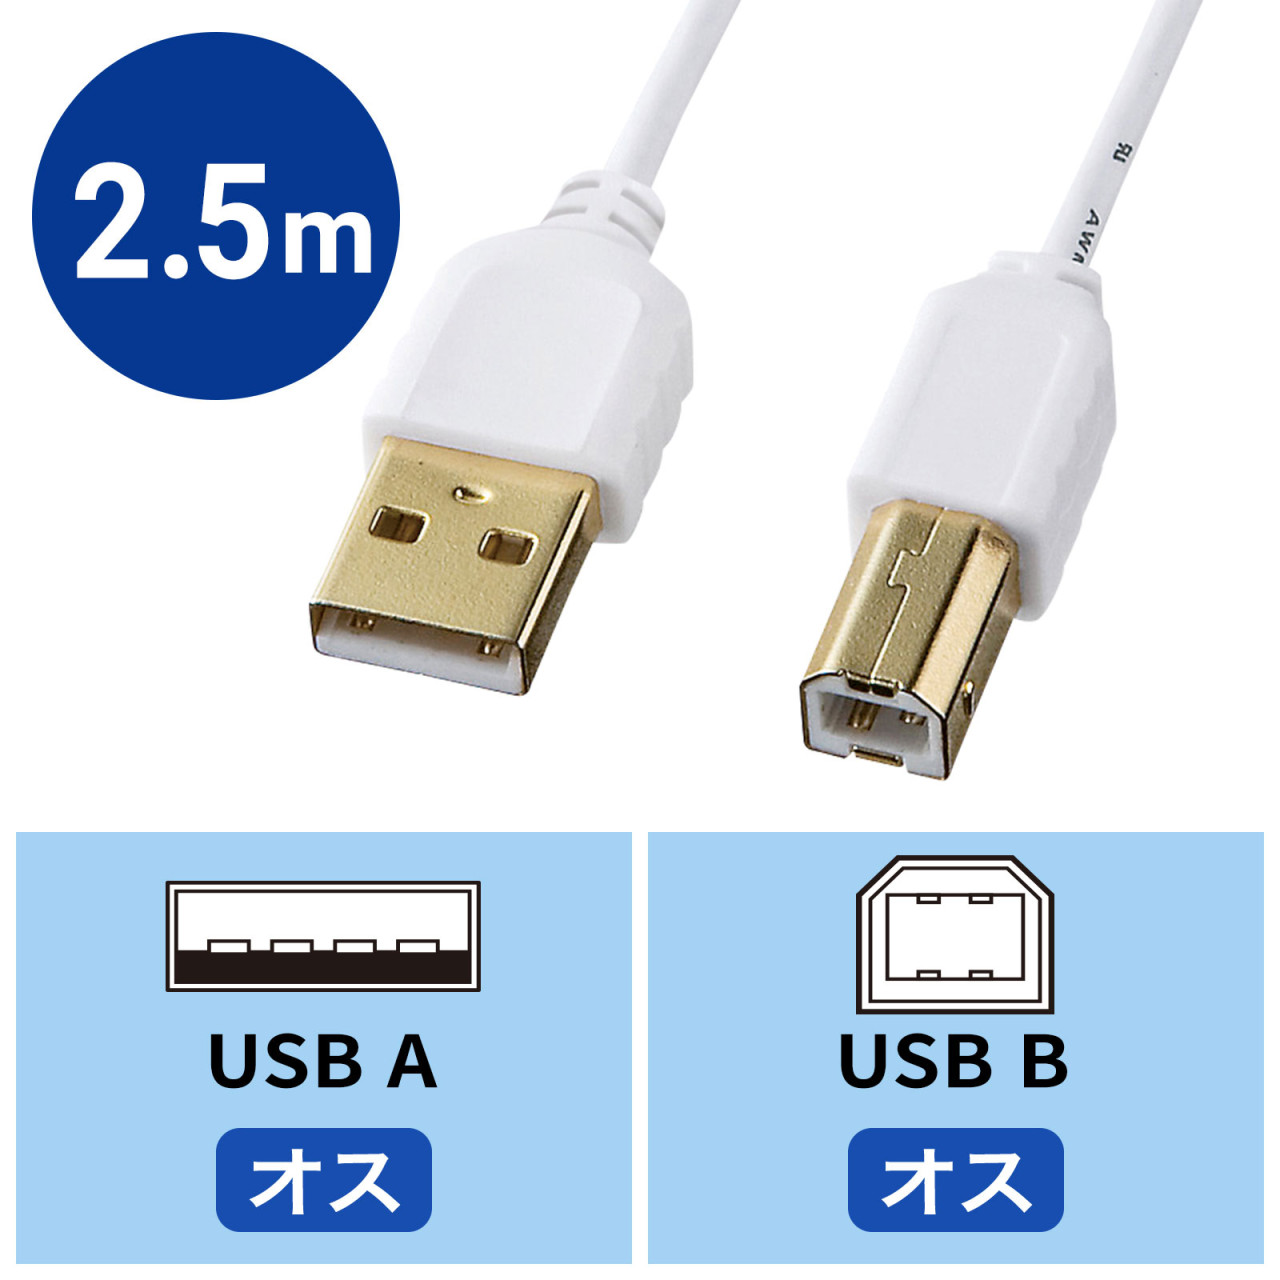 極細USBケーブル 2.5m USB2.0 A-Bコネクタ ホワイト KU20-SL25WKの通販ならサンワダイレクト